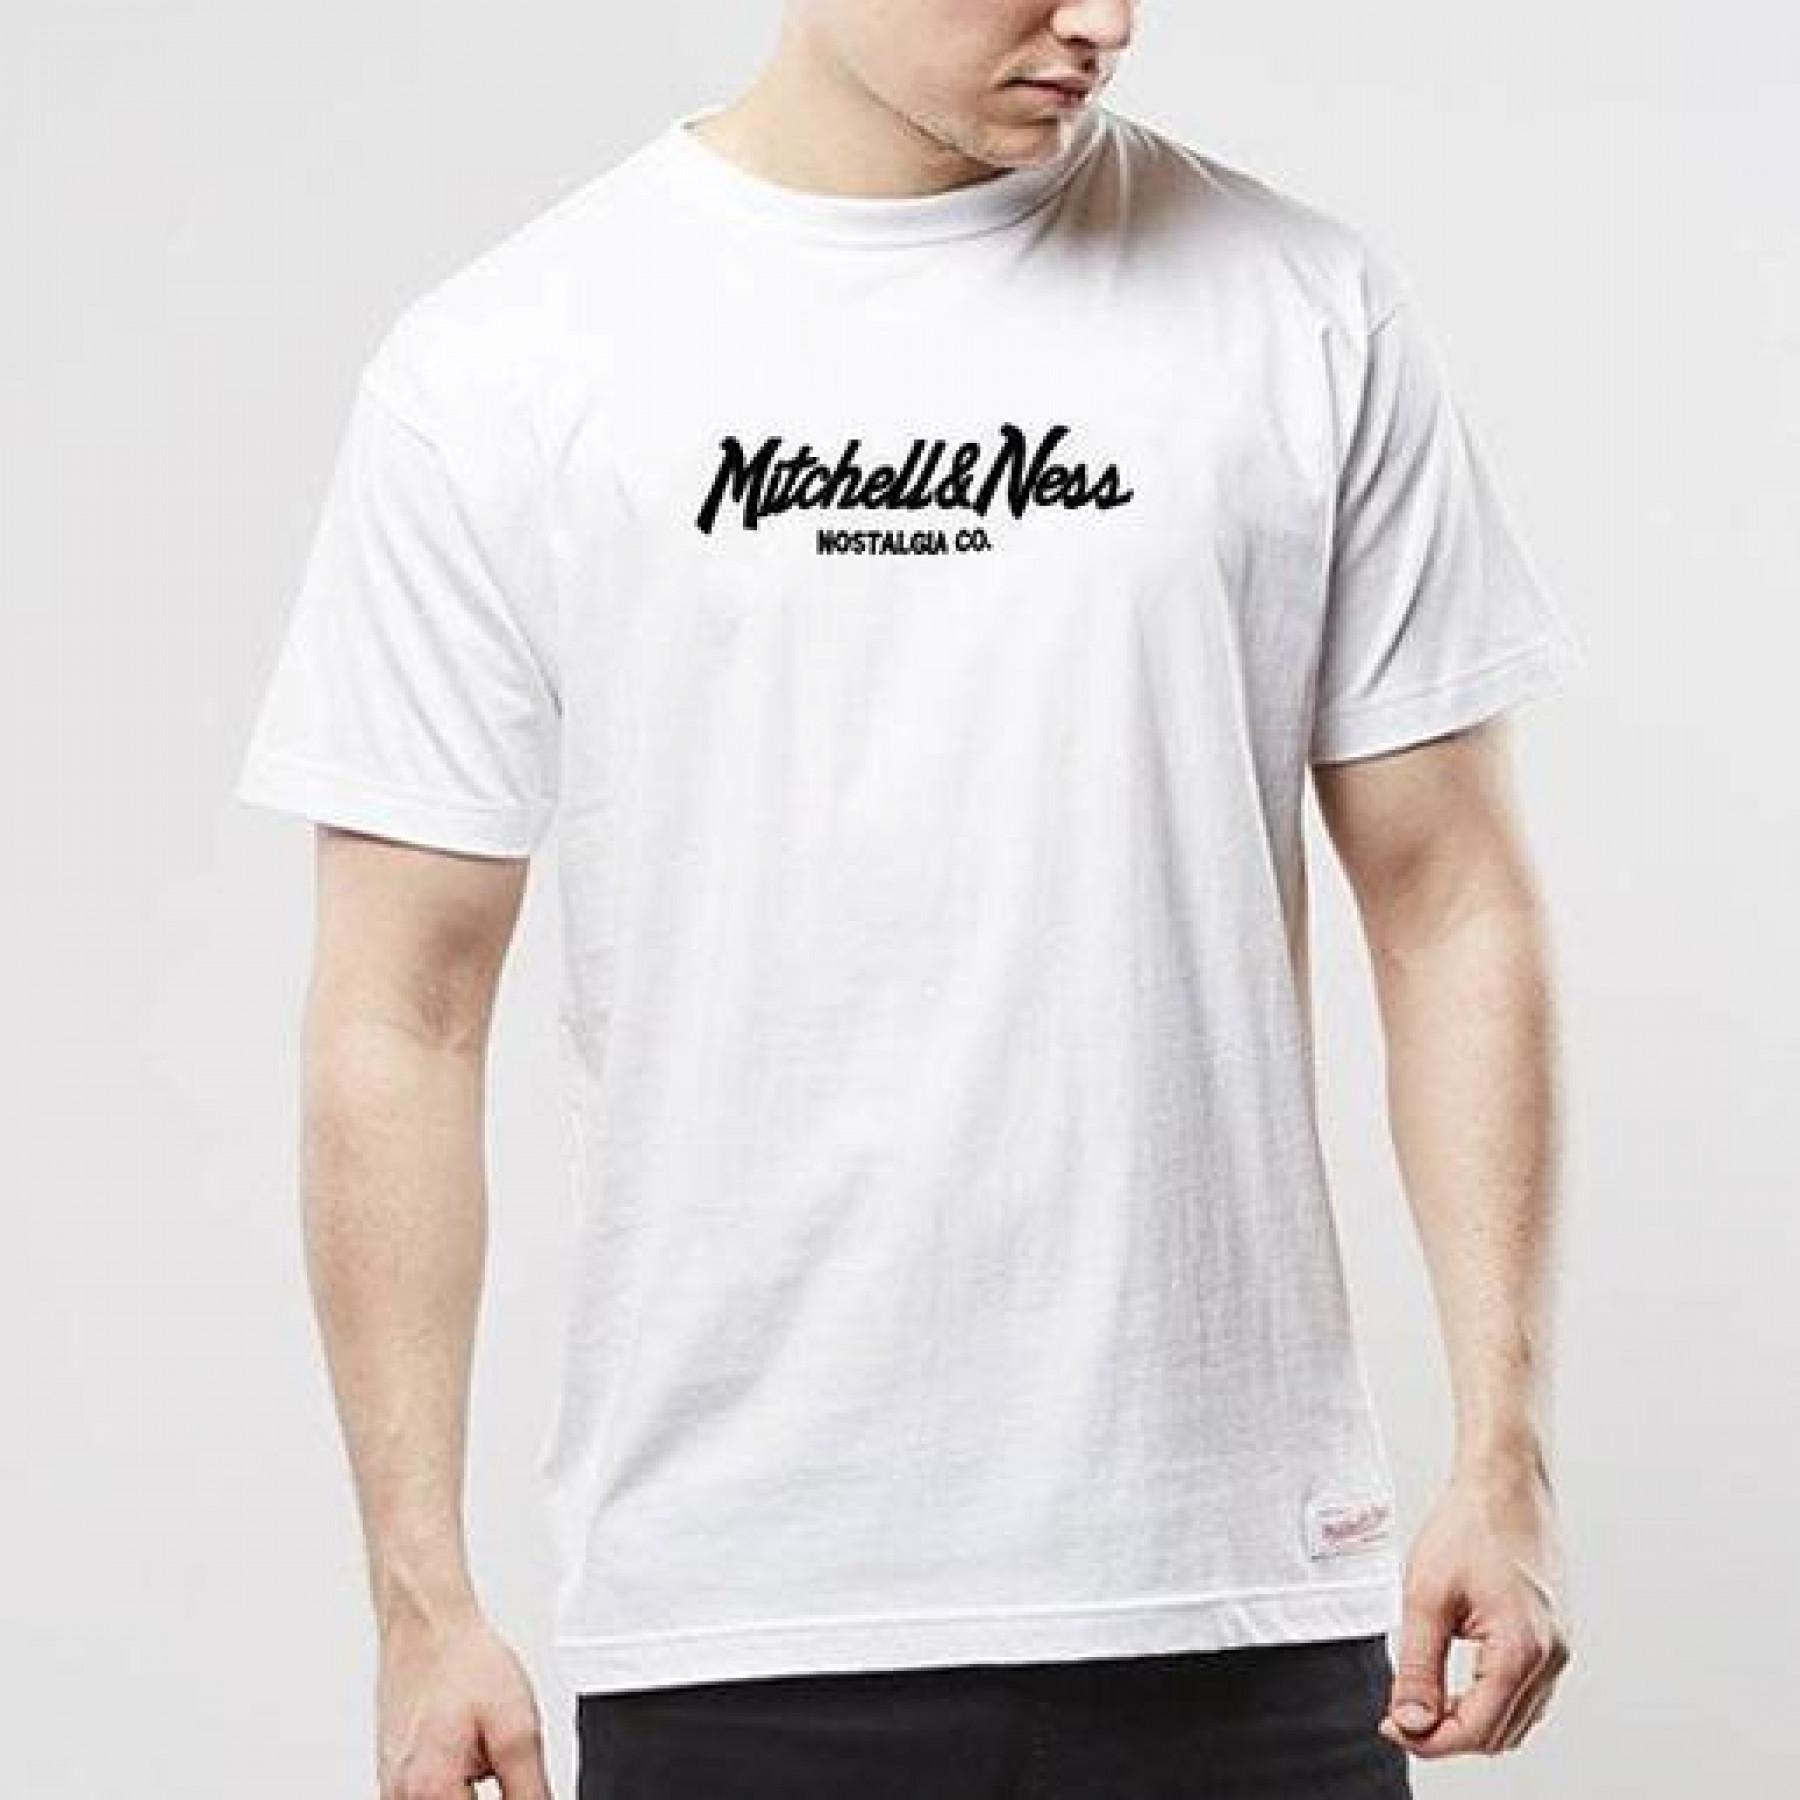 Mitchell & Ness, Shirts